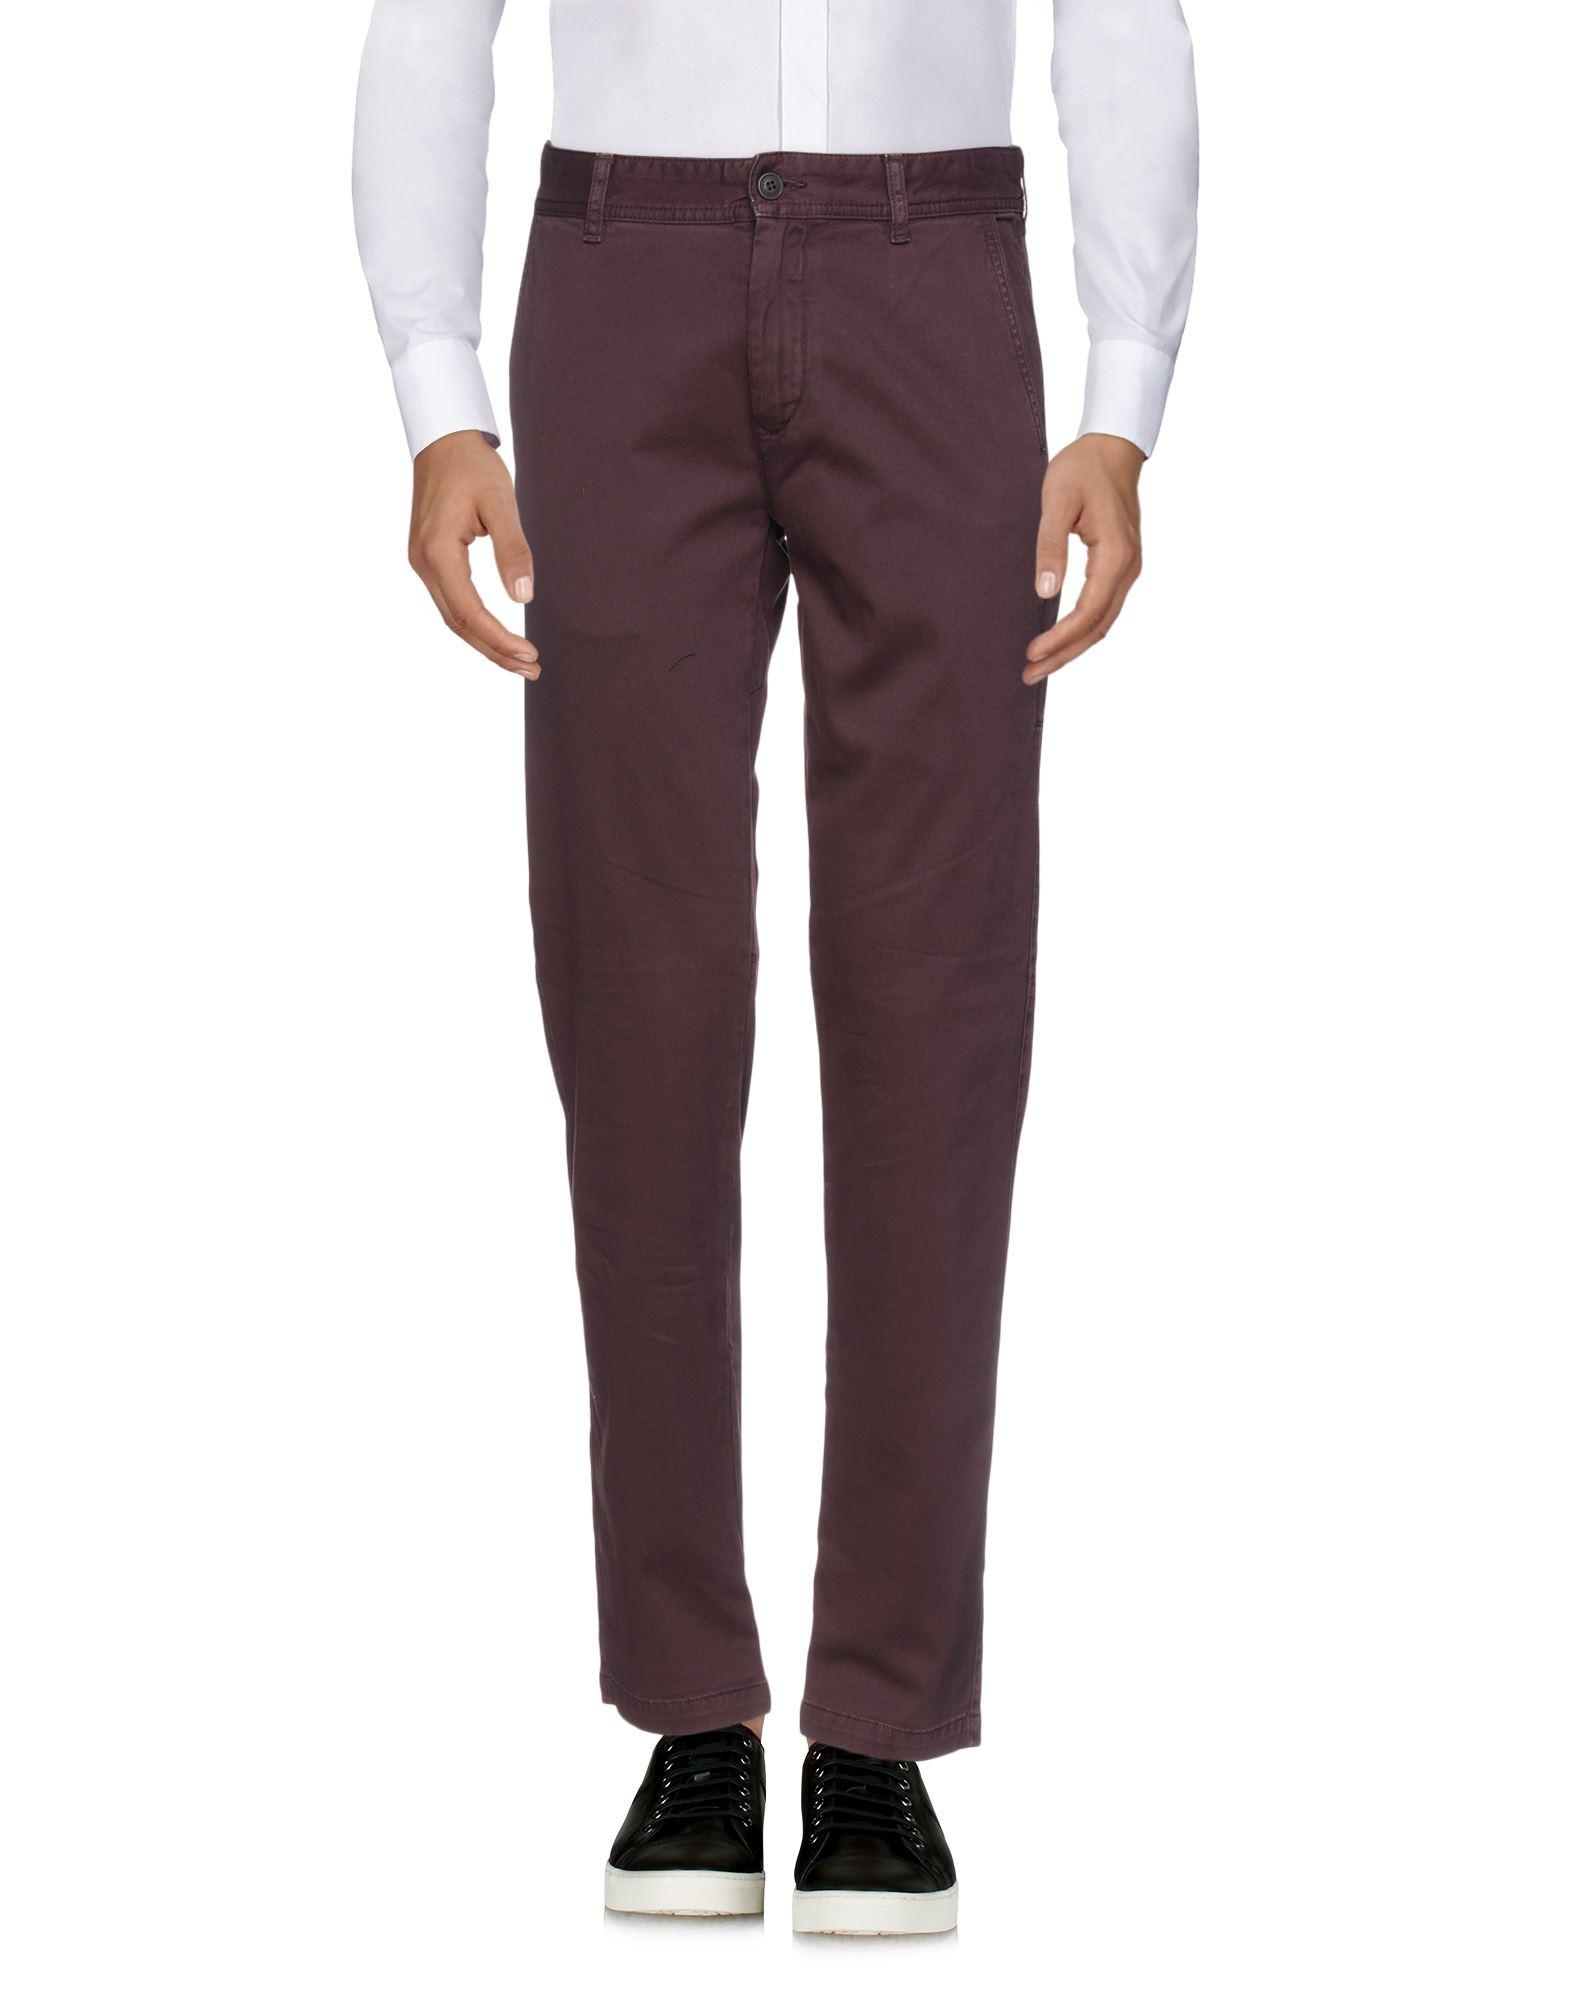 Belstaff Cotton Pants in Maroon (Purple) for Men - Lyst